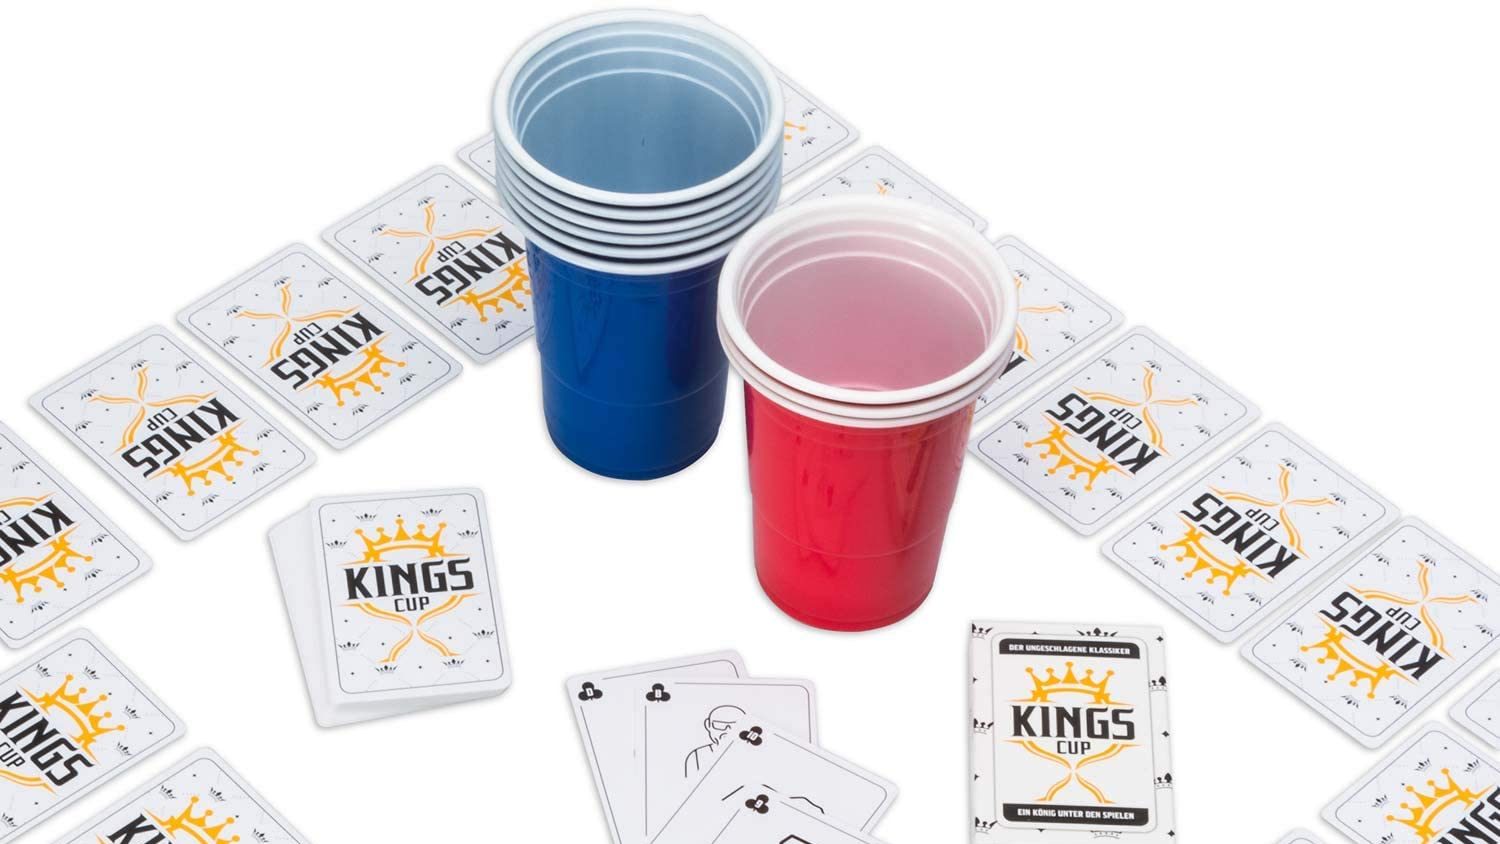 Kings cup regeln aufstellen